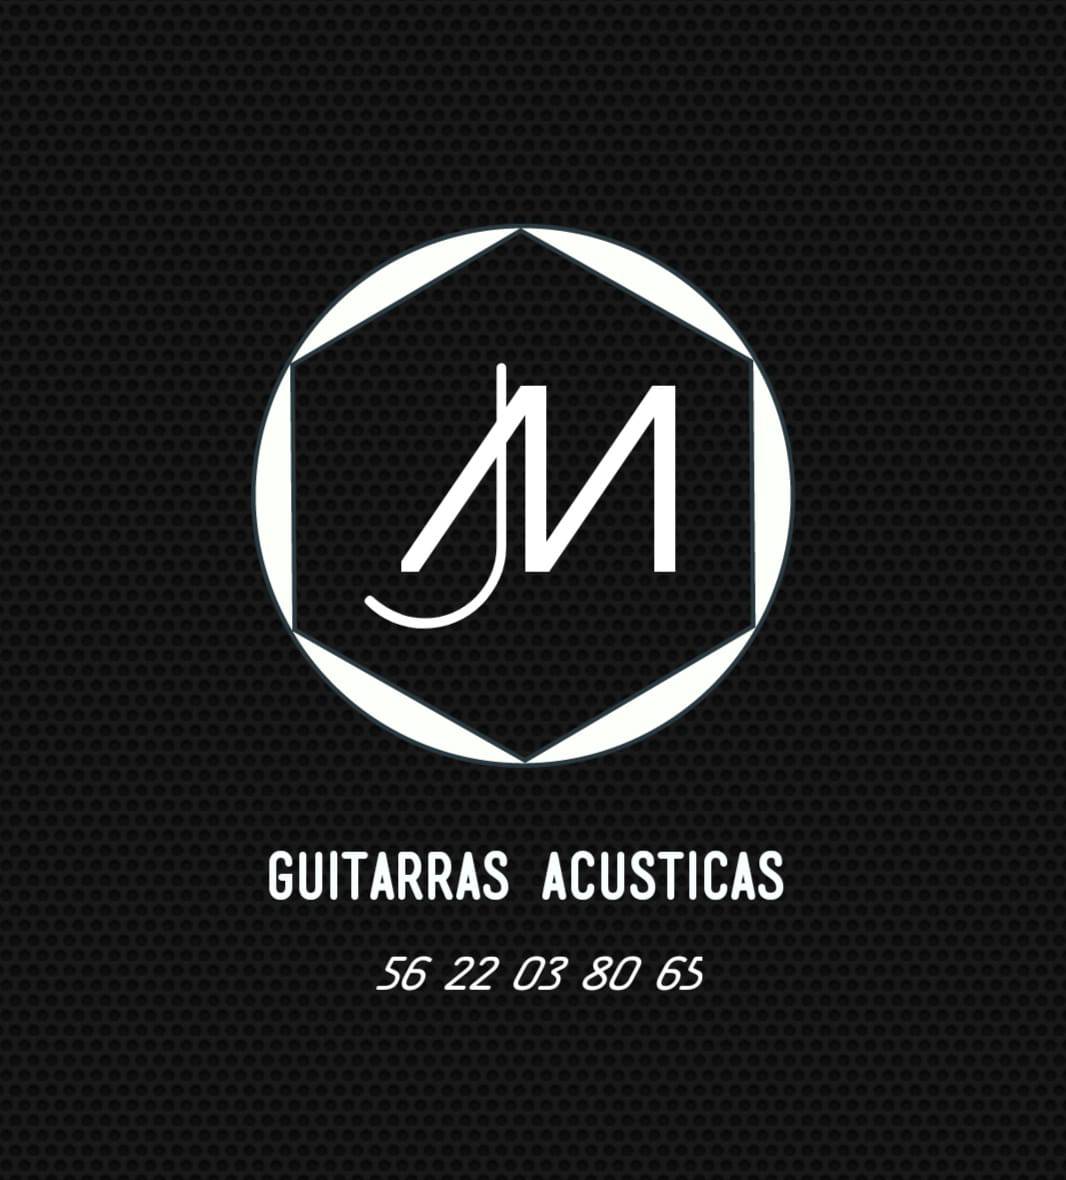 JM guitarras